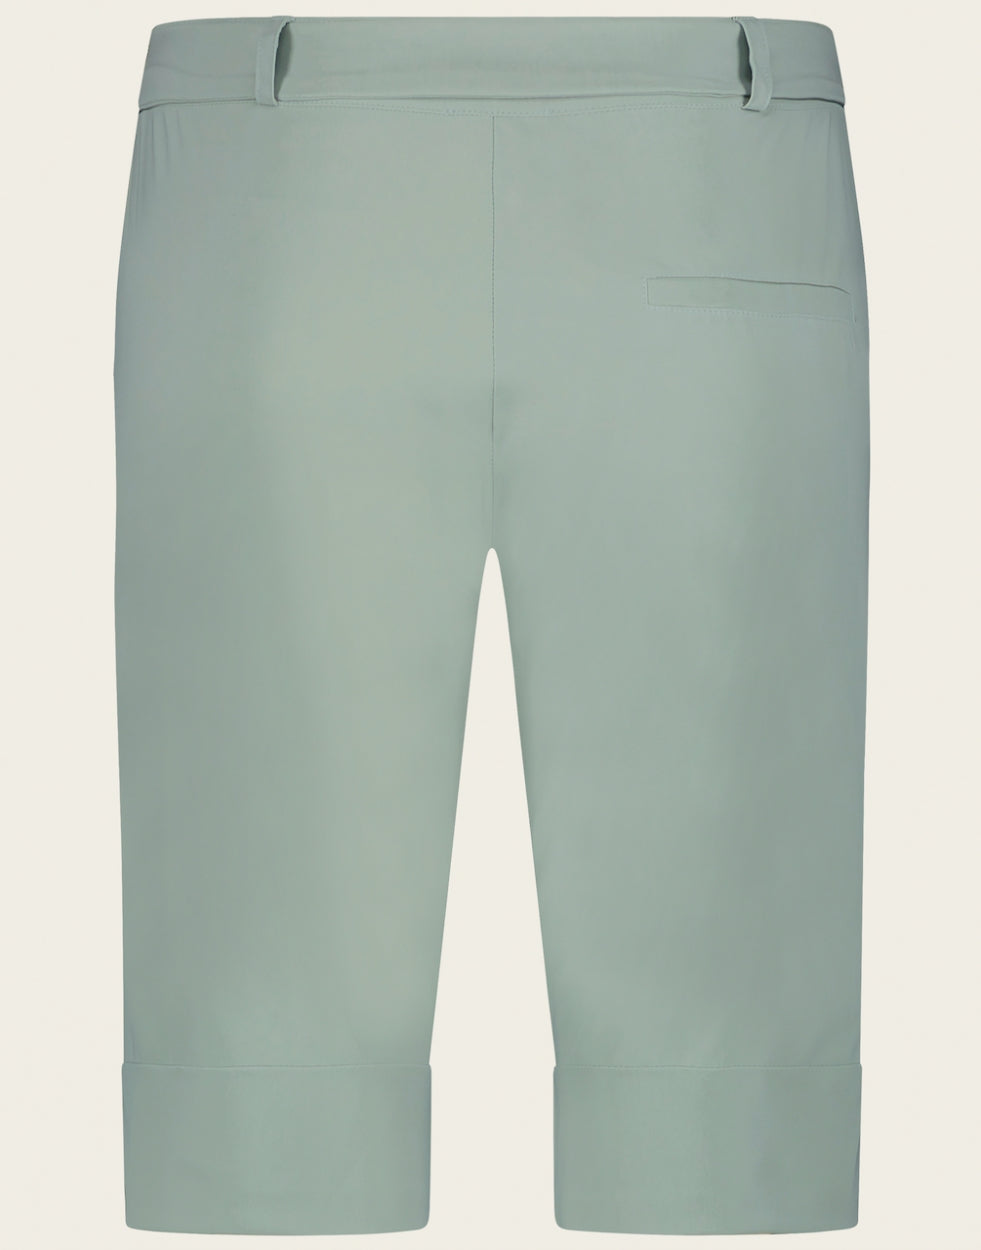 Pants Lulu Technical Jersey | Aqua